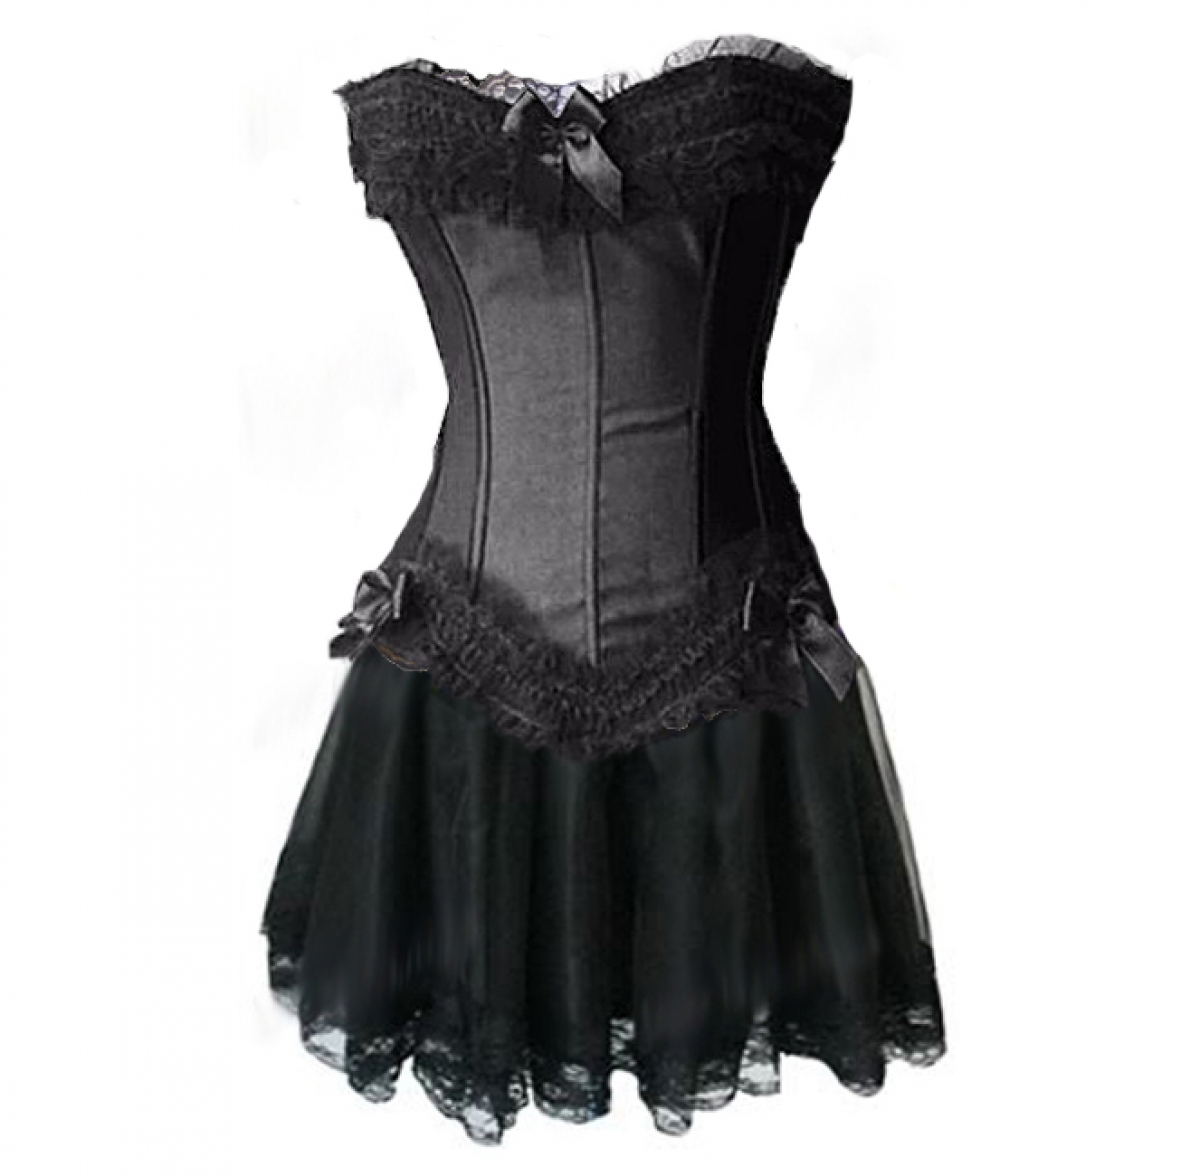 Classy Couture - Black Burlesque Punk Corset & skirt Plus Size|Black ...